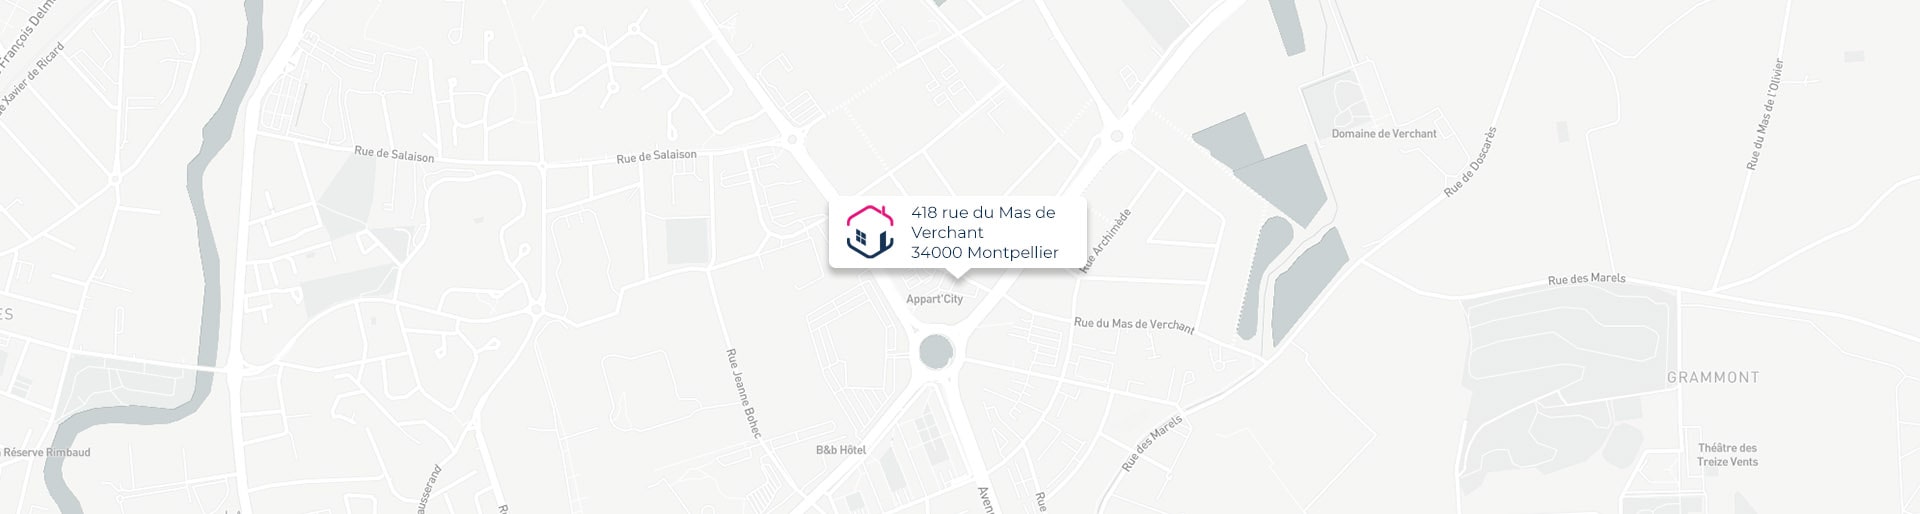 Plan de l'agence de Montpellier IMMO9 située 418, rue du Mas de Verchant 34000 Montpellier tel: 04 11 93 73 34